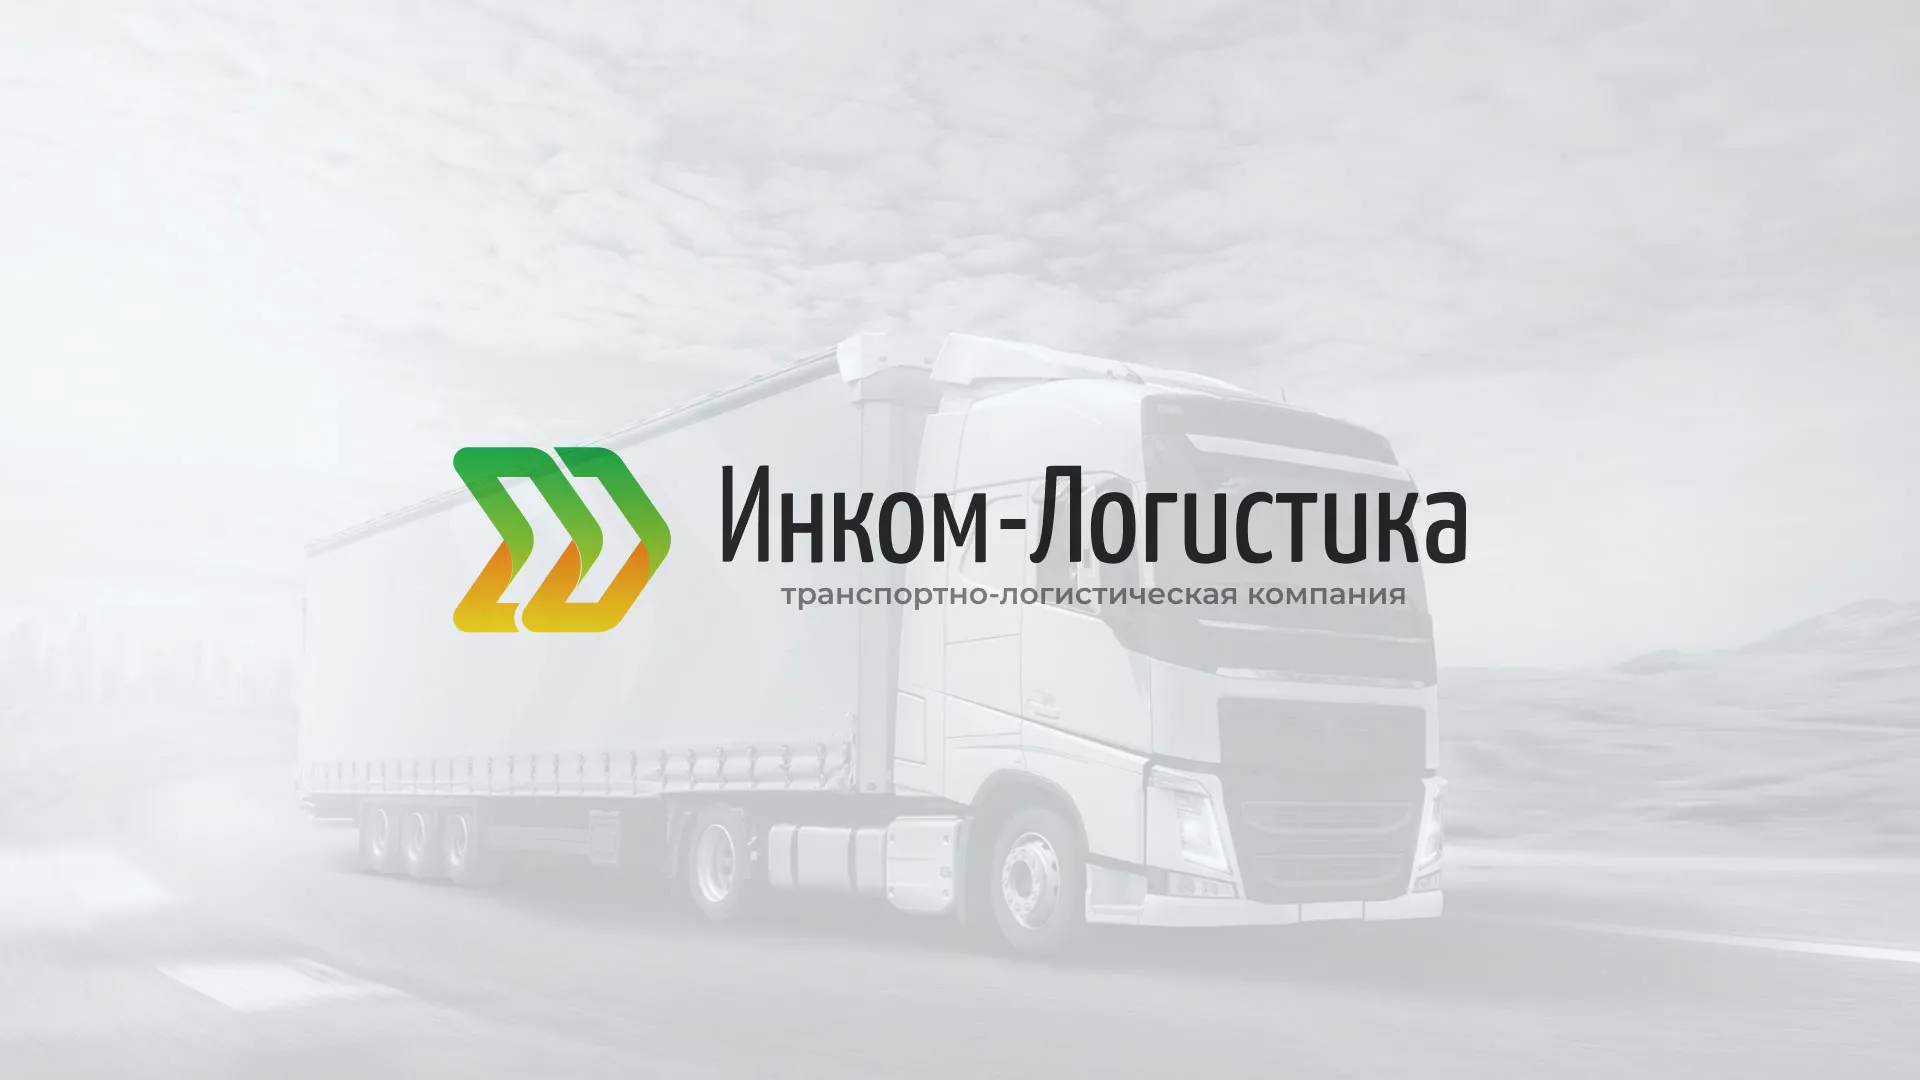 Разработка логотипа и сайта компании «Инком-Логистика» в Кологриве